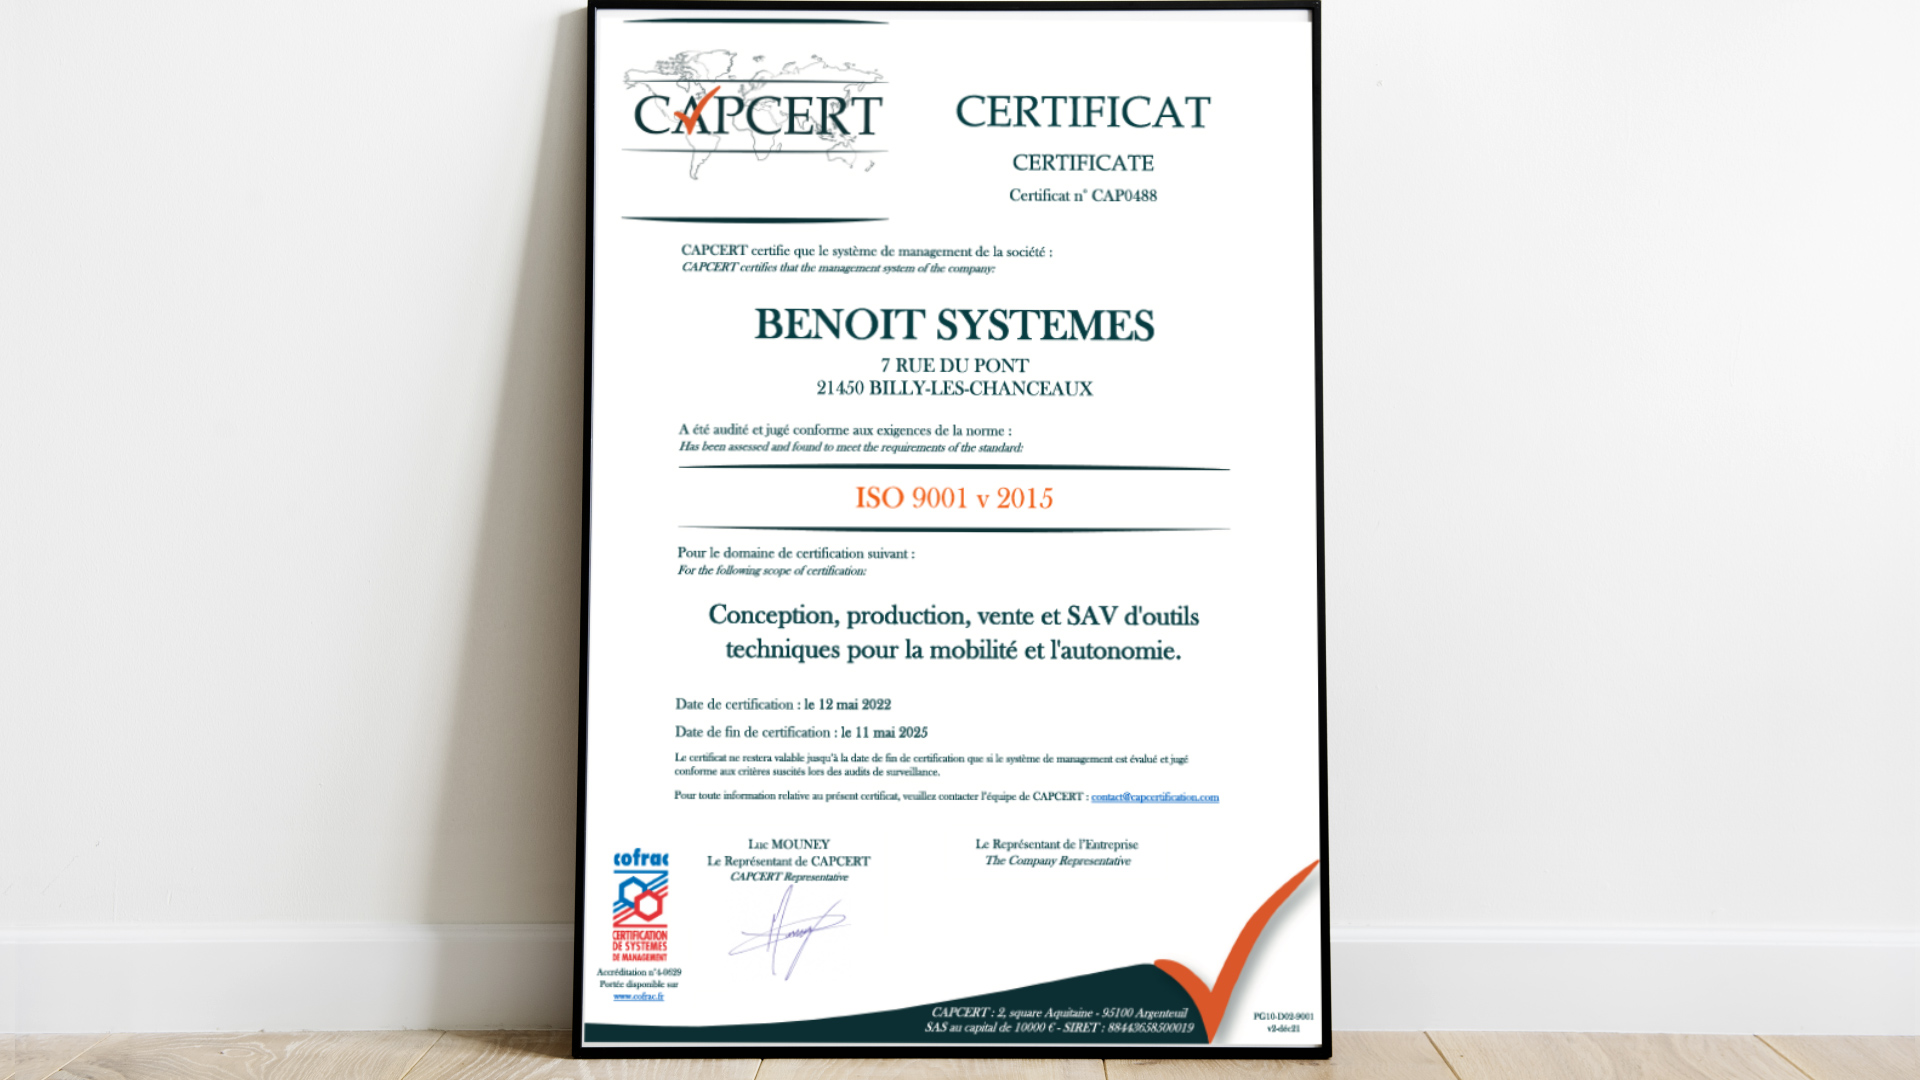 BENOIT SYSTÈMES OBTIENT LES CERTIFICATIONS ISO 9001 :2015 ET ISO 14001 :2015